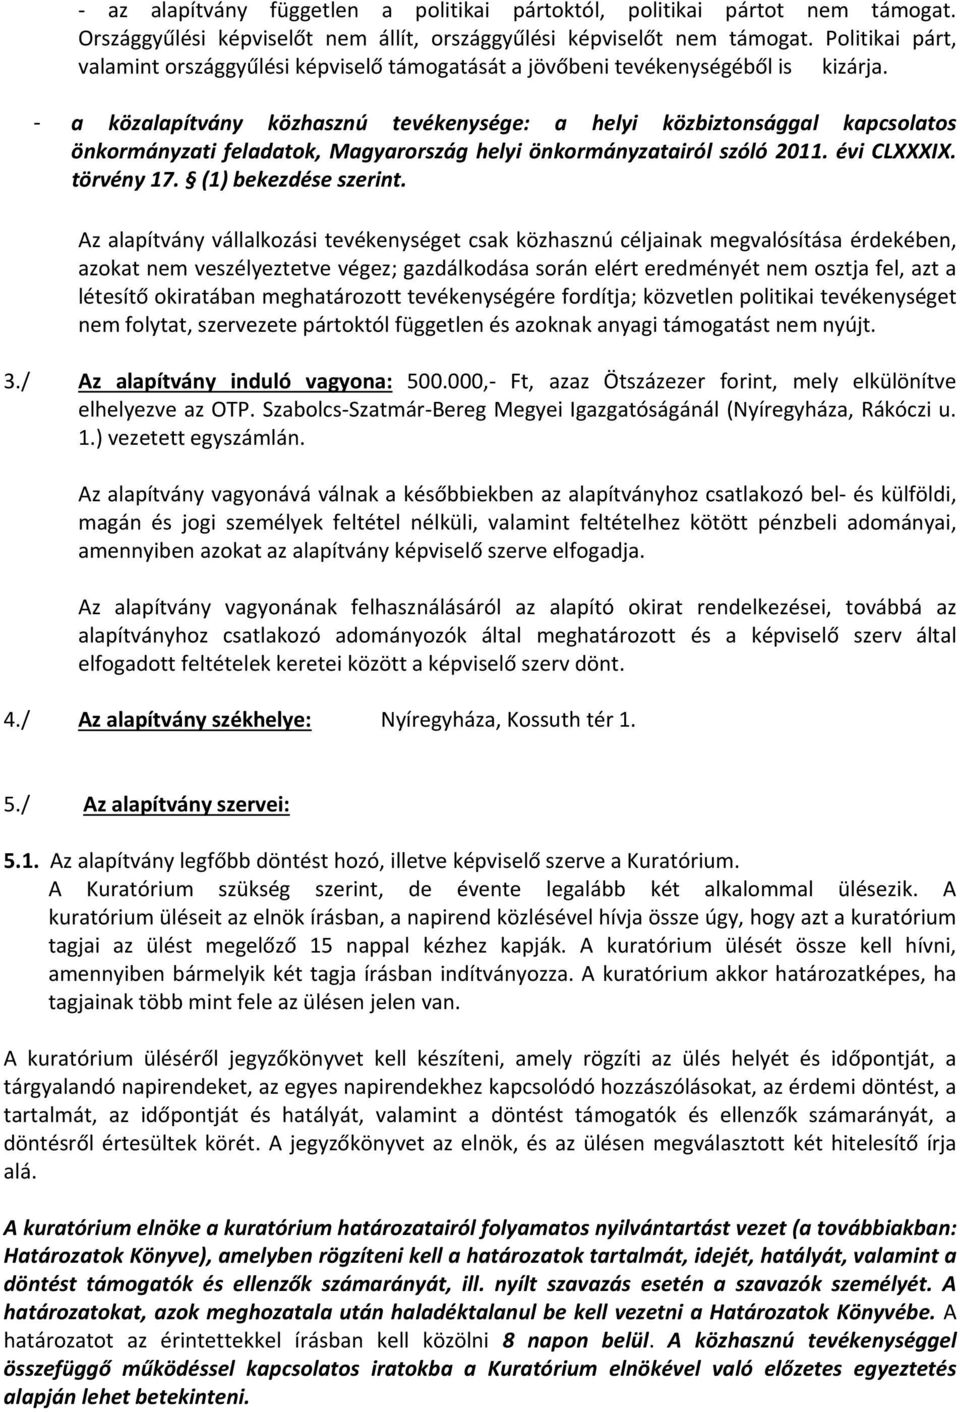 - a közalapítvány közhasznú tevékenysége: a helyi közbiztonsággal kapcsolatos önkormányzati feladatok, Magyarország helyi önkormányzatairól szóló 2011. évi CLXXXIX. törvény 17. (1) bekezdése szerint.